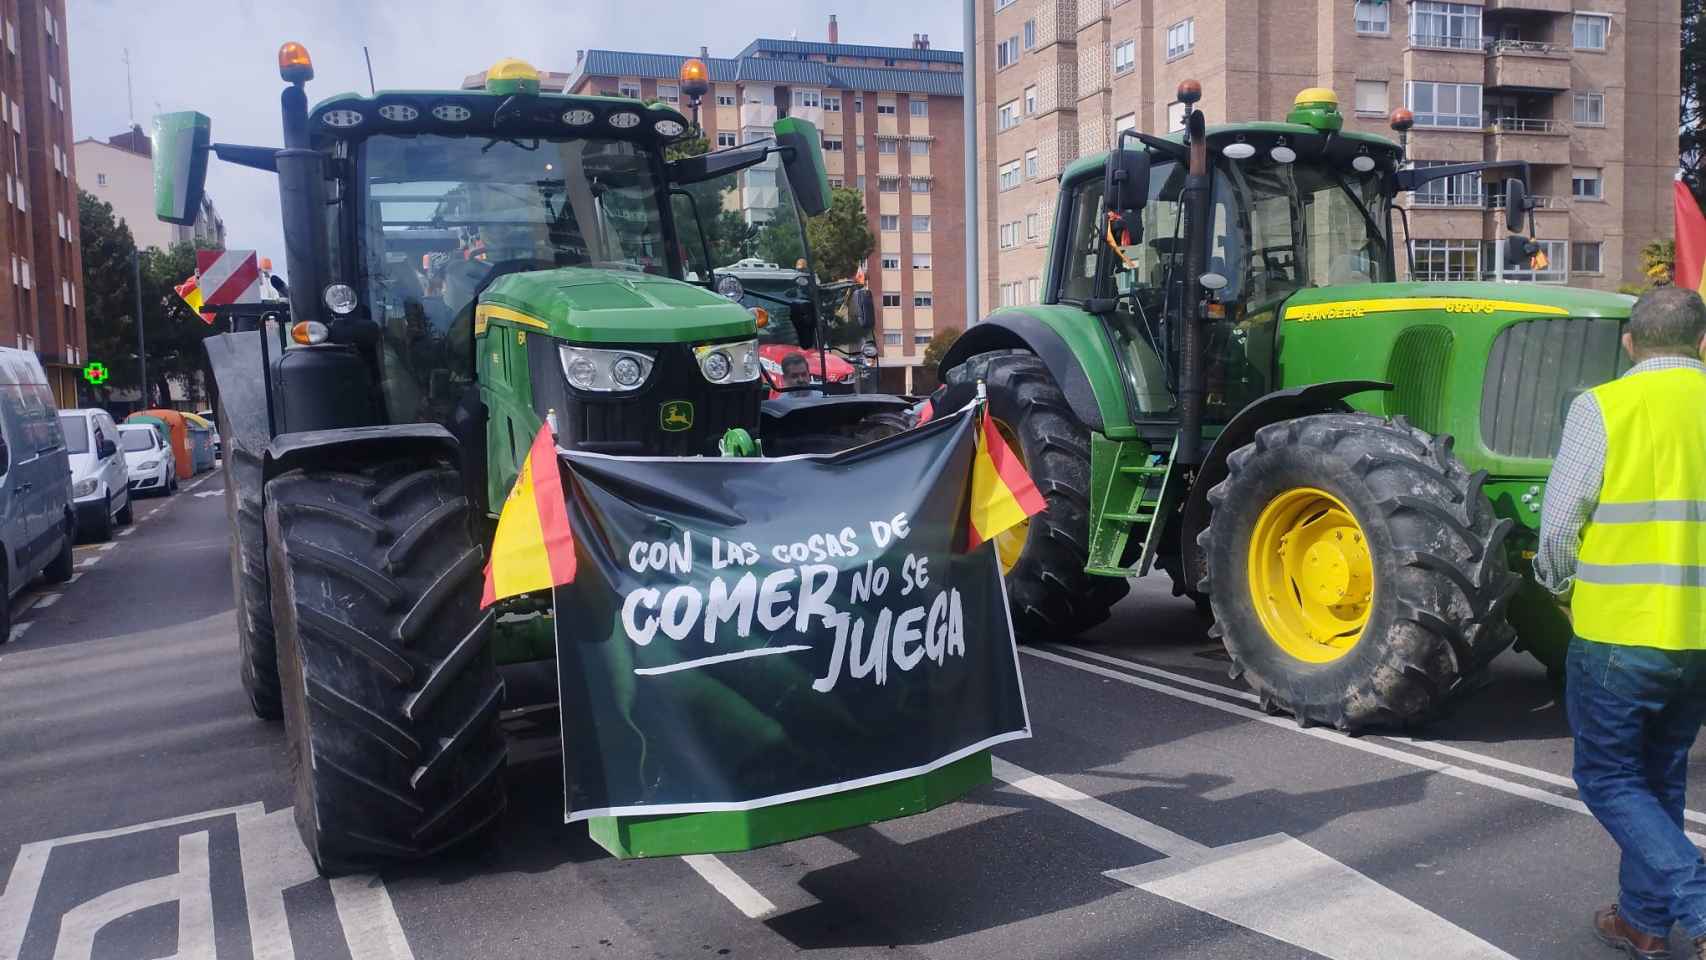 Un tractor circula por las calles de Valladolid con el lema 'con las cosas del comer no se juega'